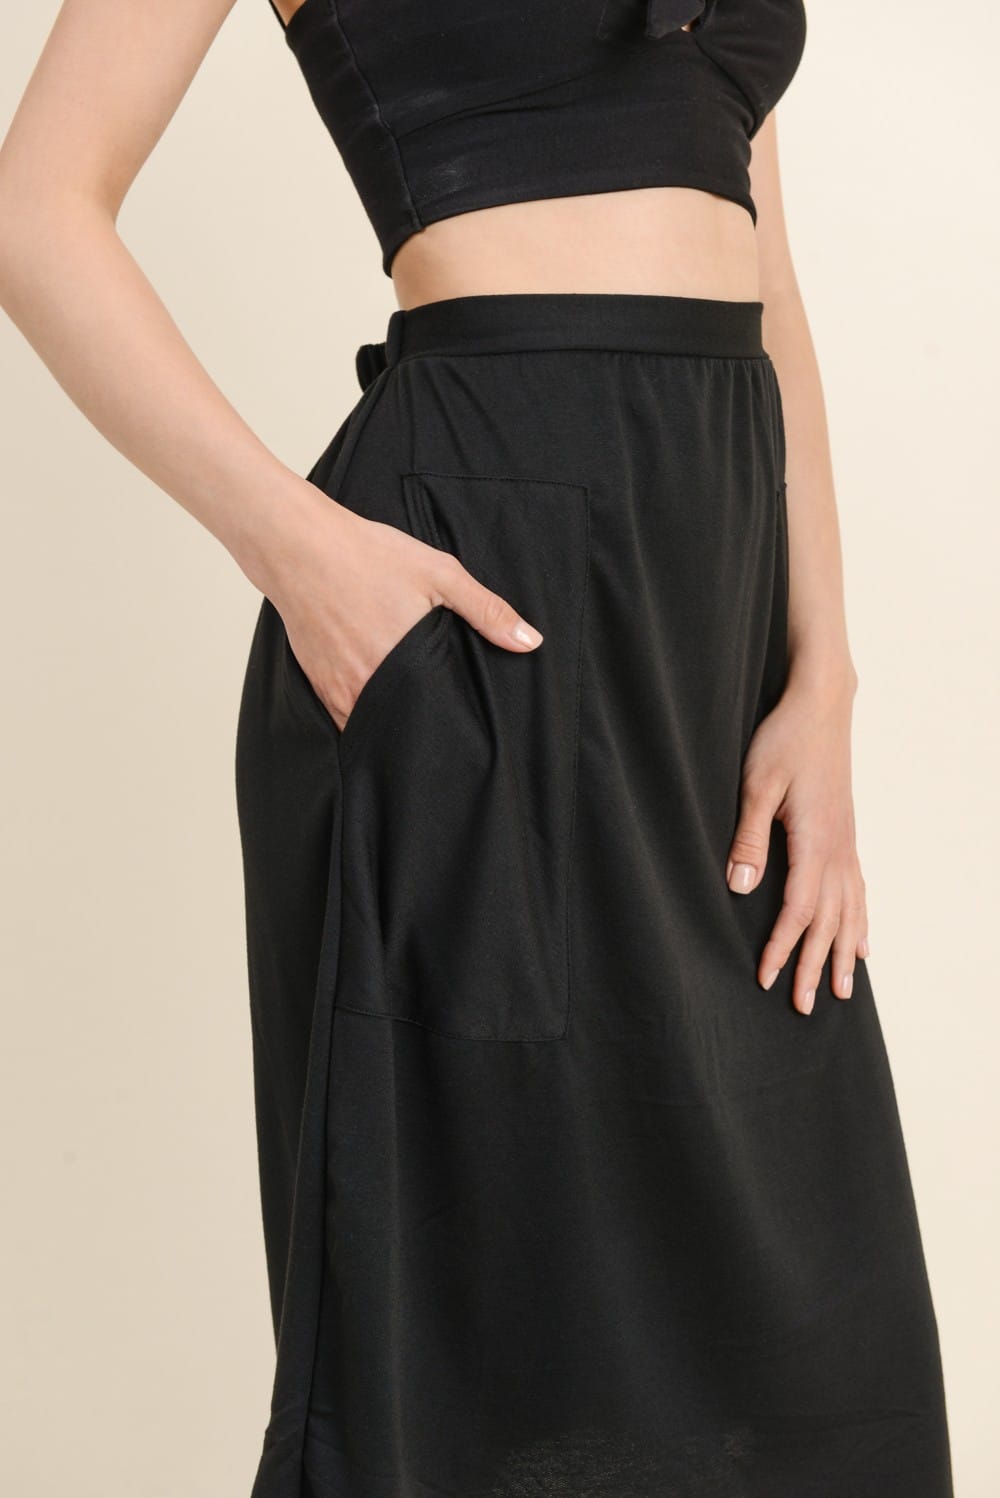 Black Knit Midi Skirt The Knee LengthFrock